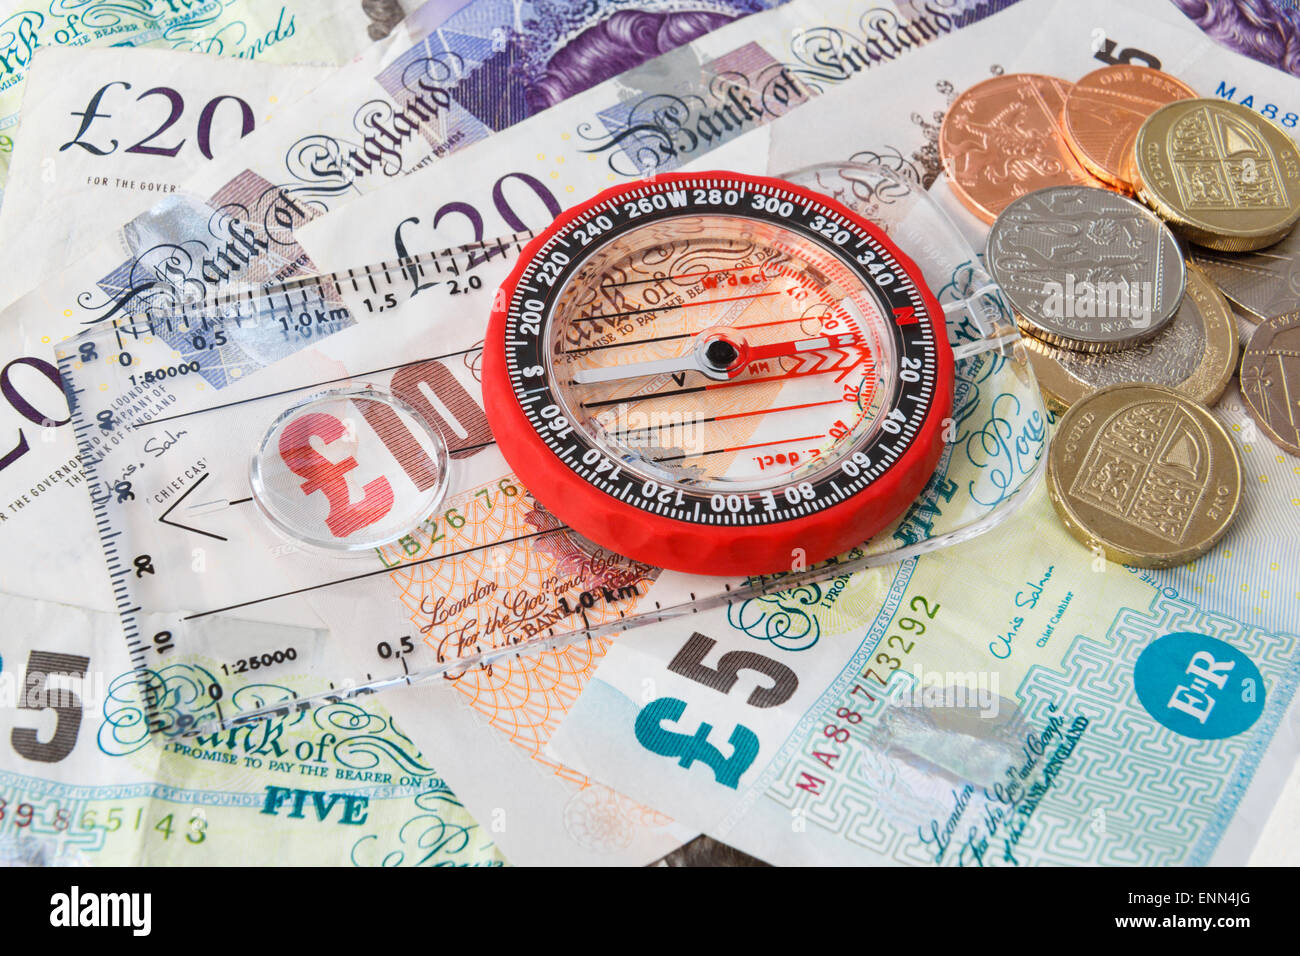 Une boussole sur la livre sterling pointant vers le sud pour illustrer l'orientation de l'économie britannique, de la richesse et de la finance concept. Angleterre Royaume-Uni Grande-Bretagne Banque D'Images